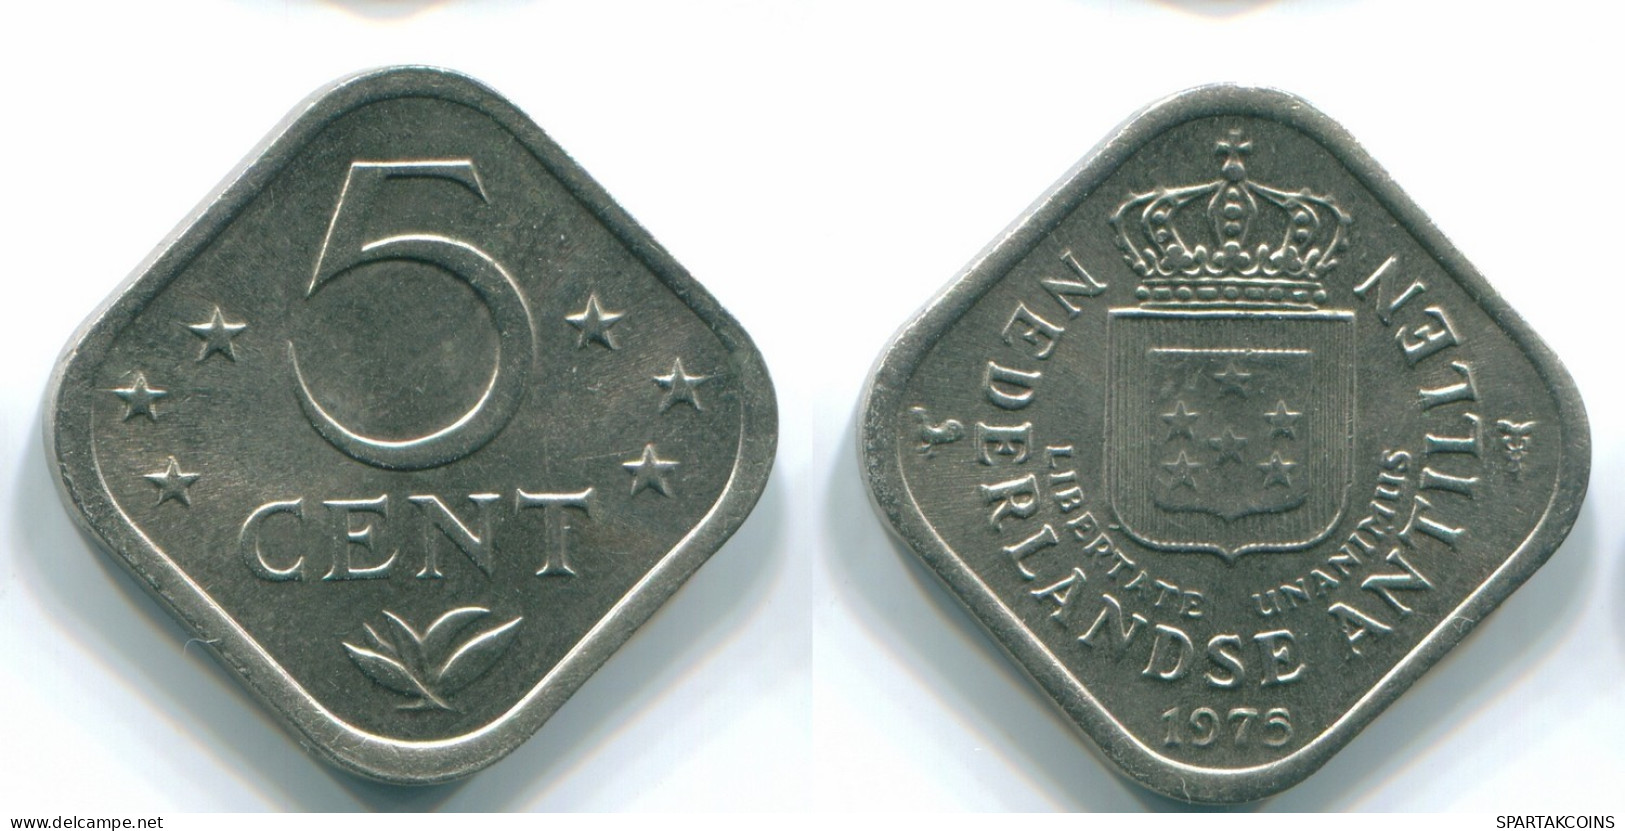 5 CENTS 1975 NETHERLANDS ANTILLES Nickel Colonial Coin #S12245.U.A - Niederländische Antillen